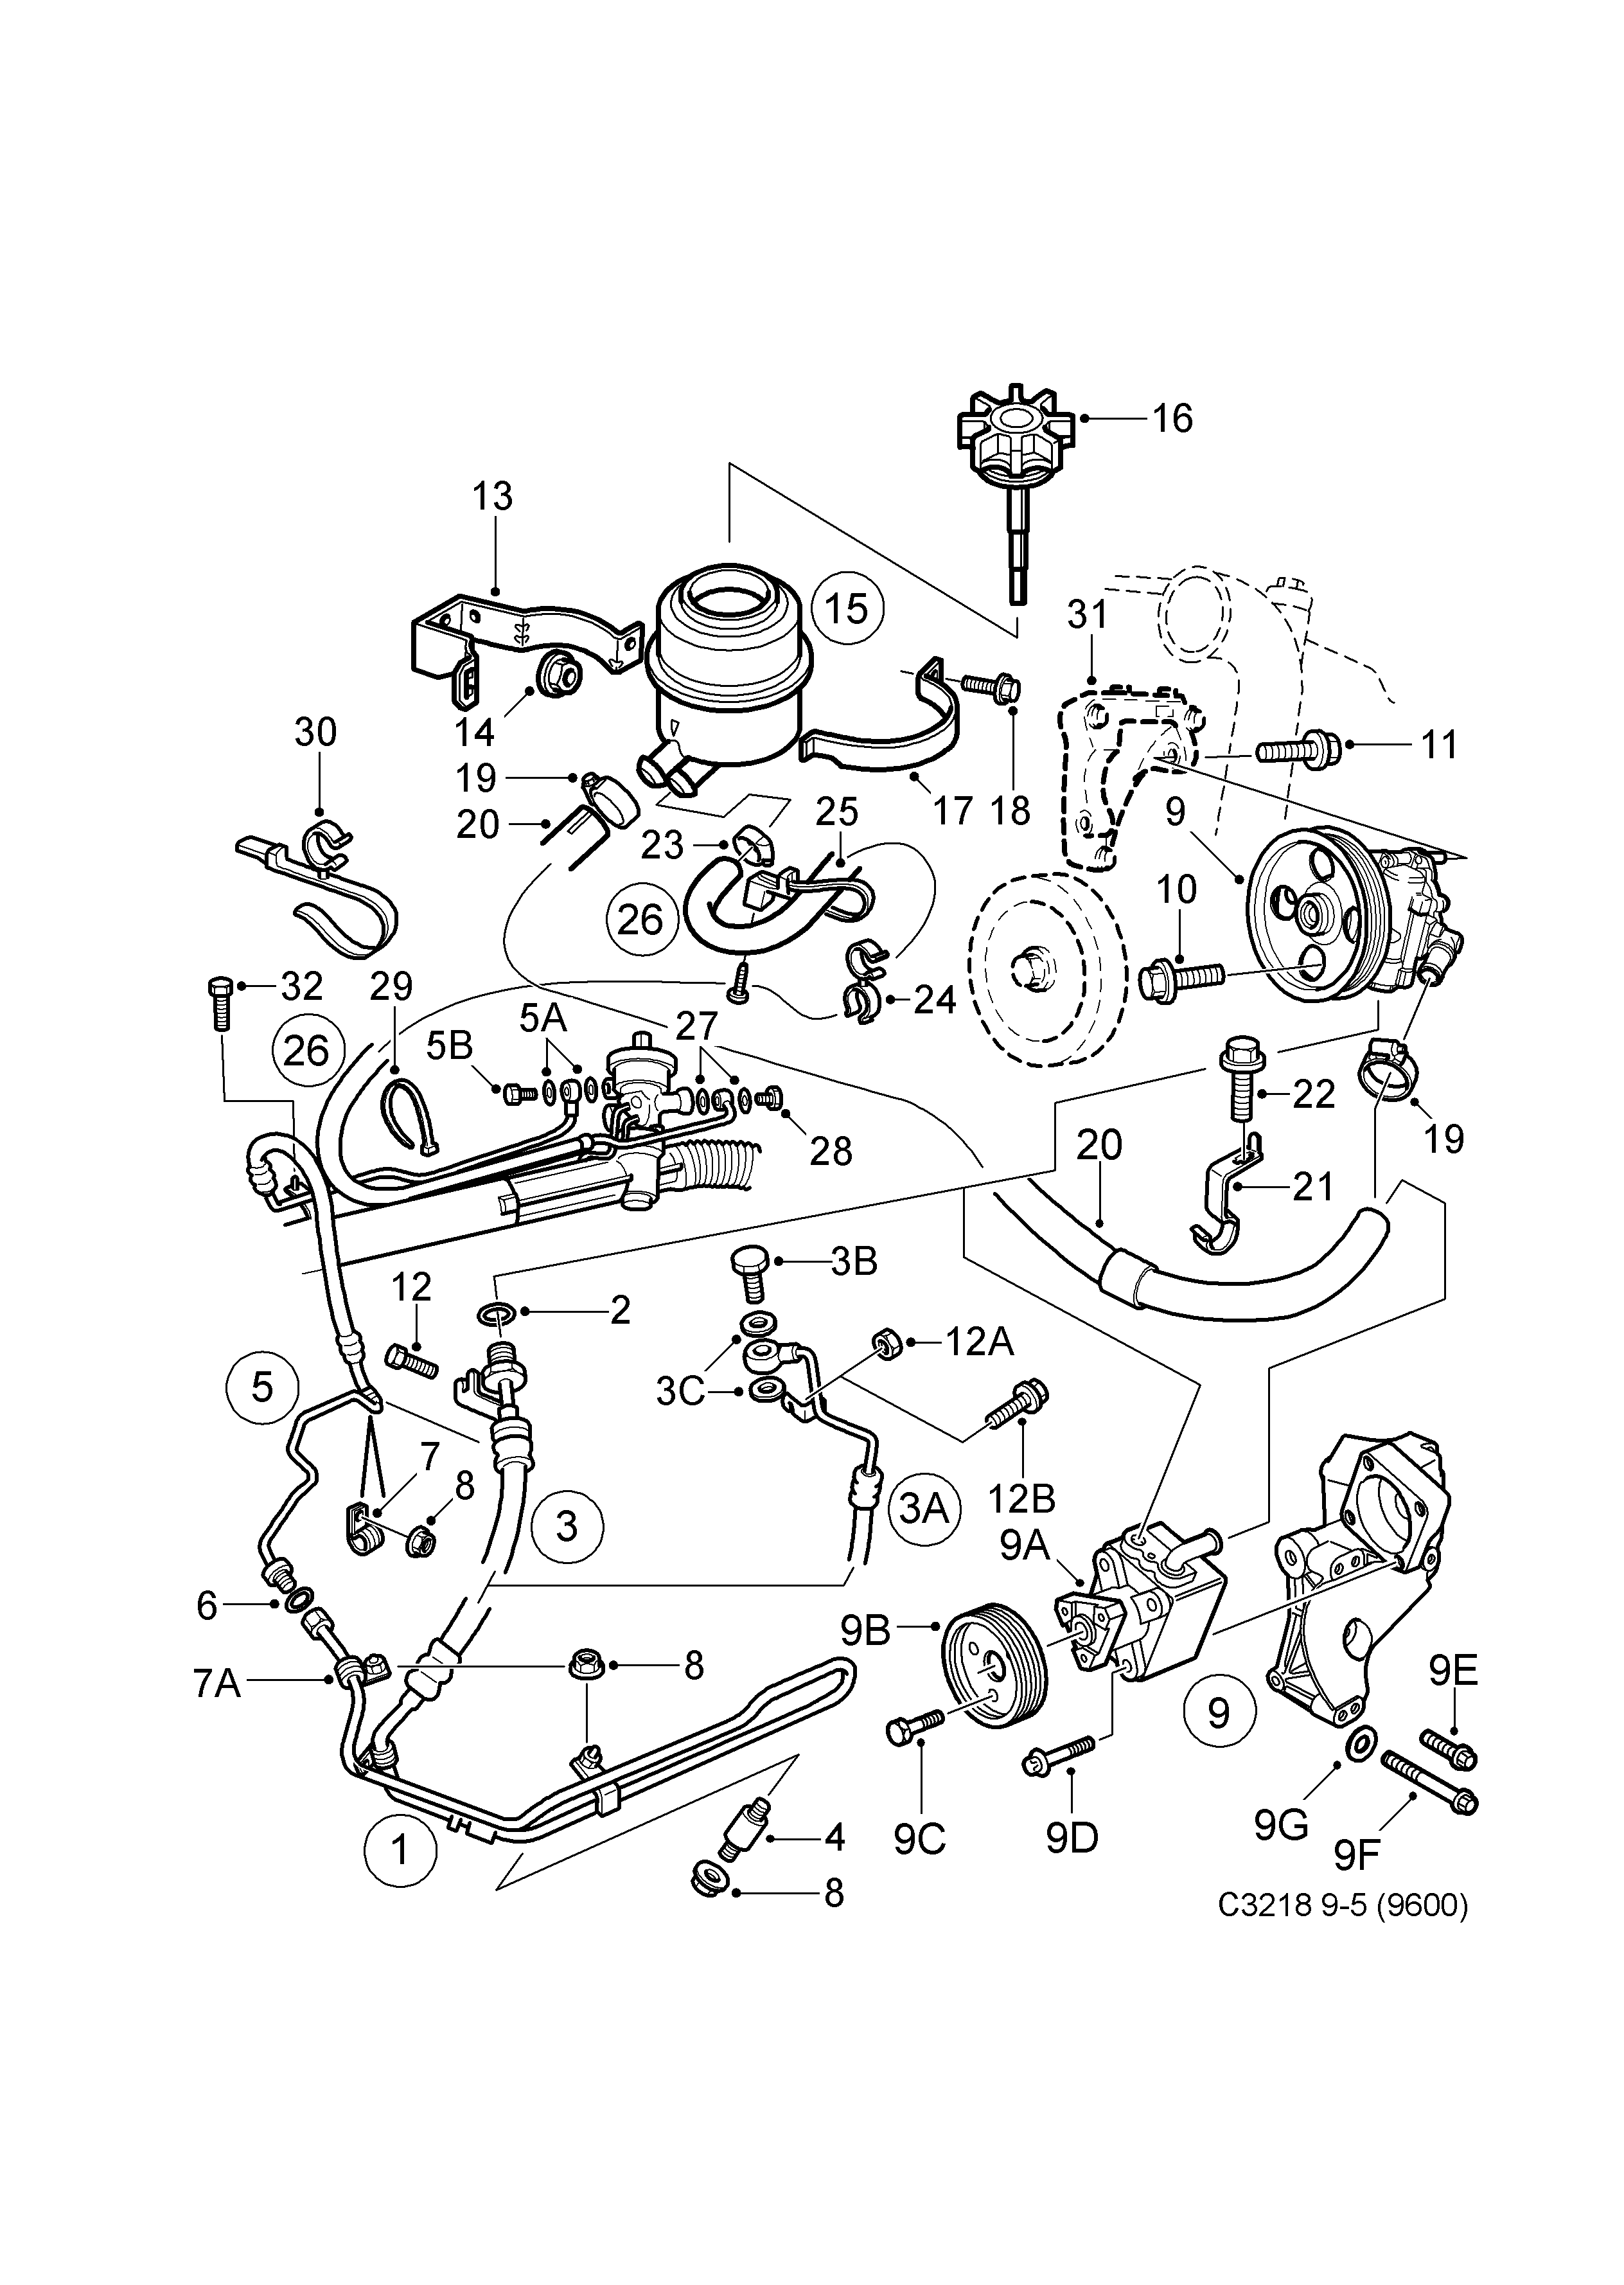 Pump, hydraulic oil - hoses, (1998-2010)